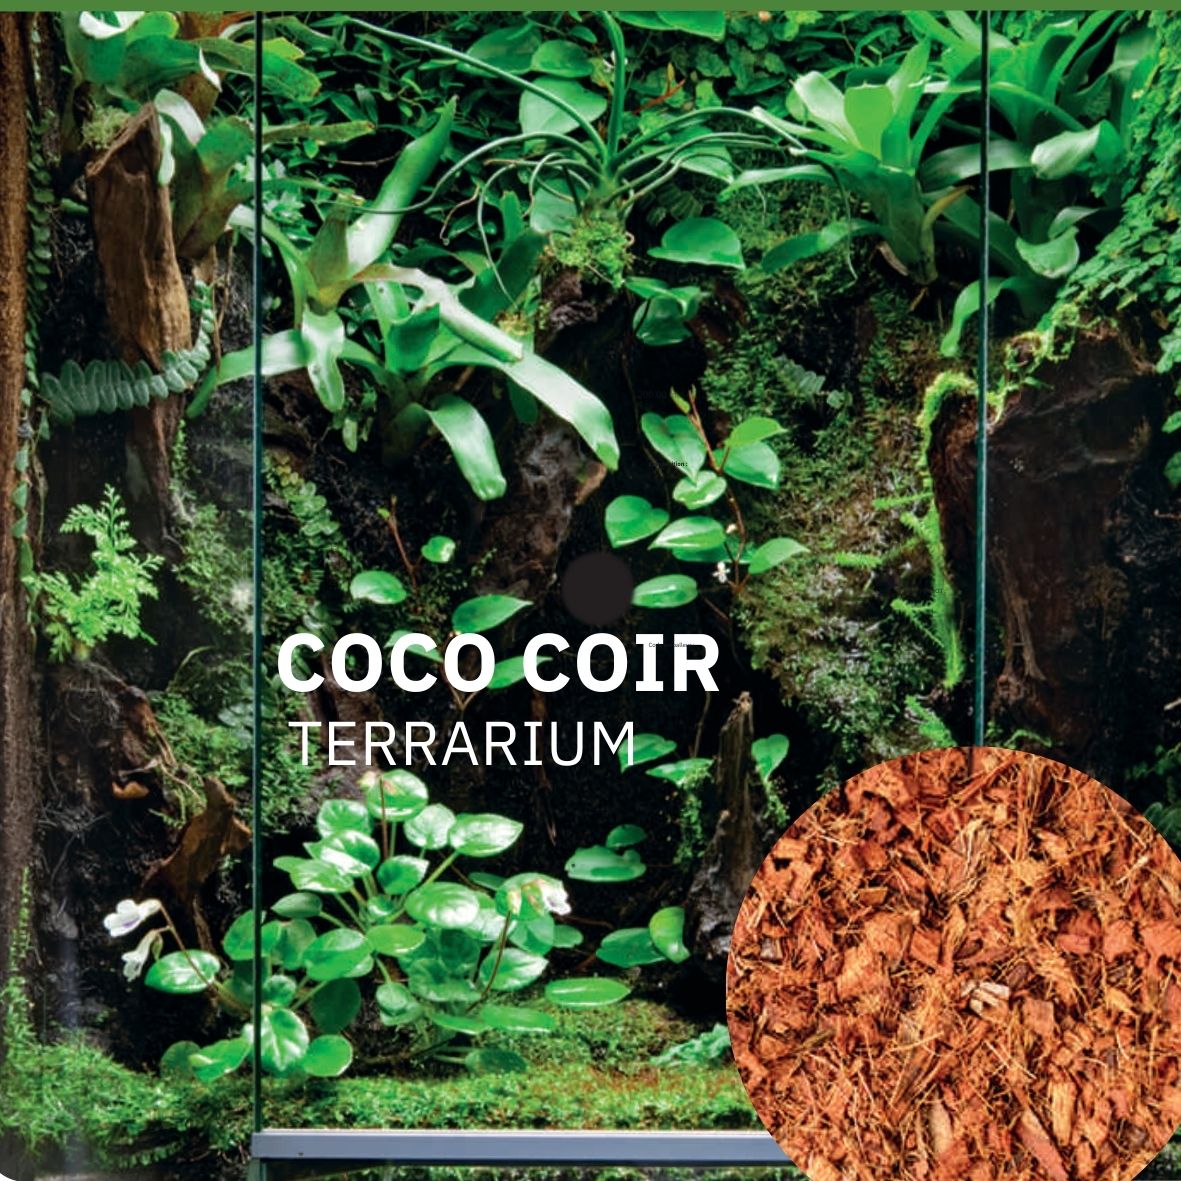 Coco coir terrarium